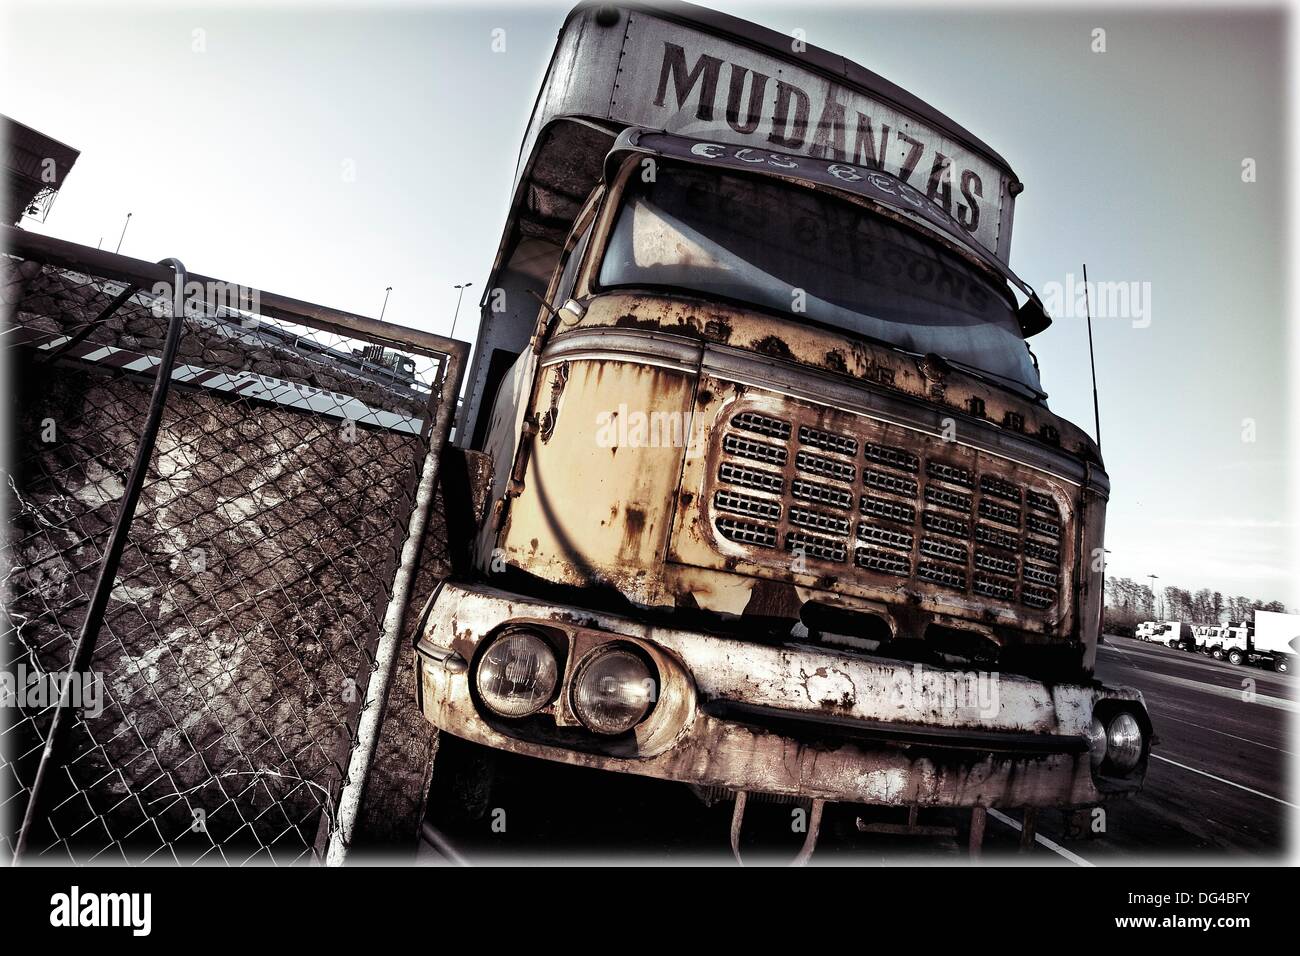 Vista frontal de antiguo camión de mudanzas oxidado Foto de stock